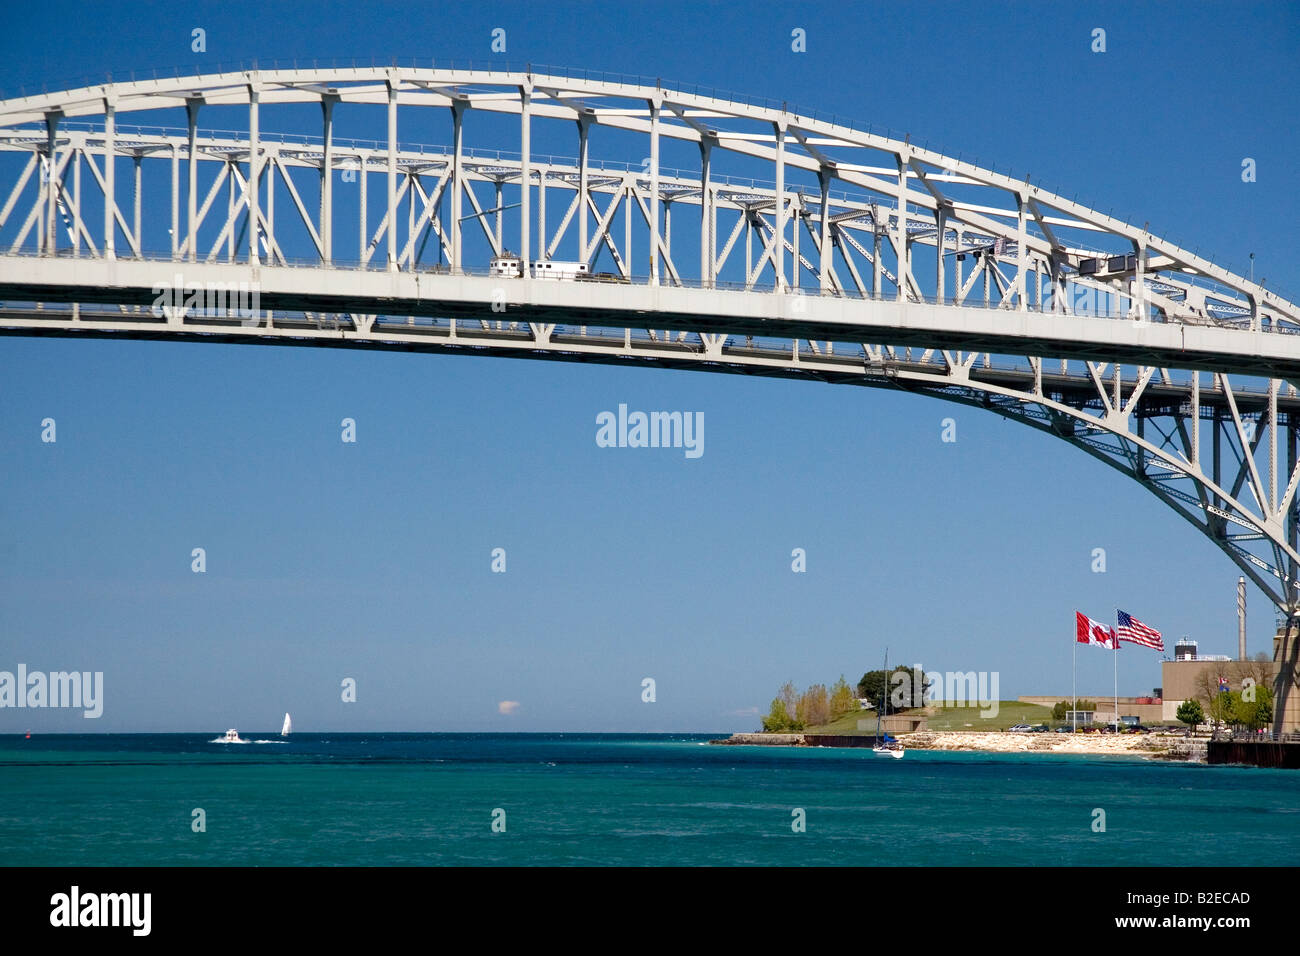 Le pont Blue Water est un pont à travée double qui s'étend sur la rivière St Clair entre Port Huron au Michigan et de Point Edward (Ontario) Banque D'Images